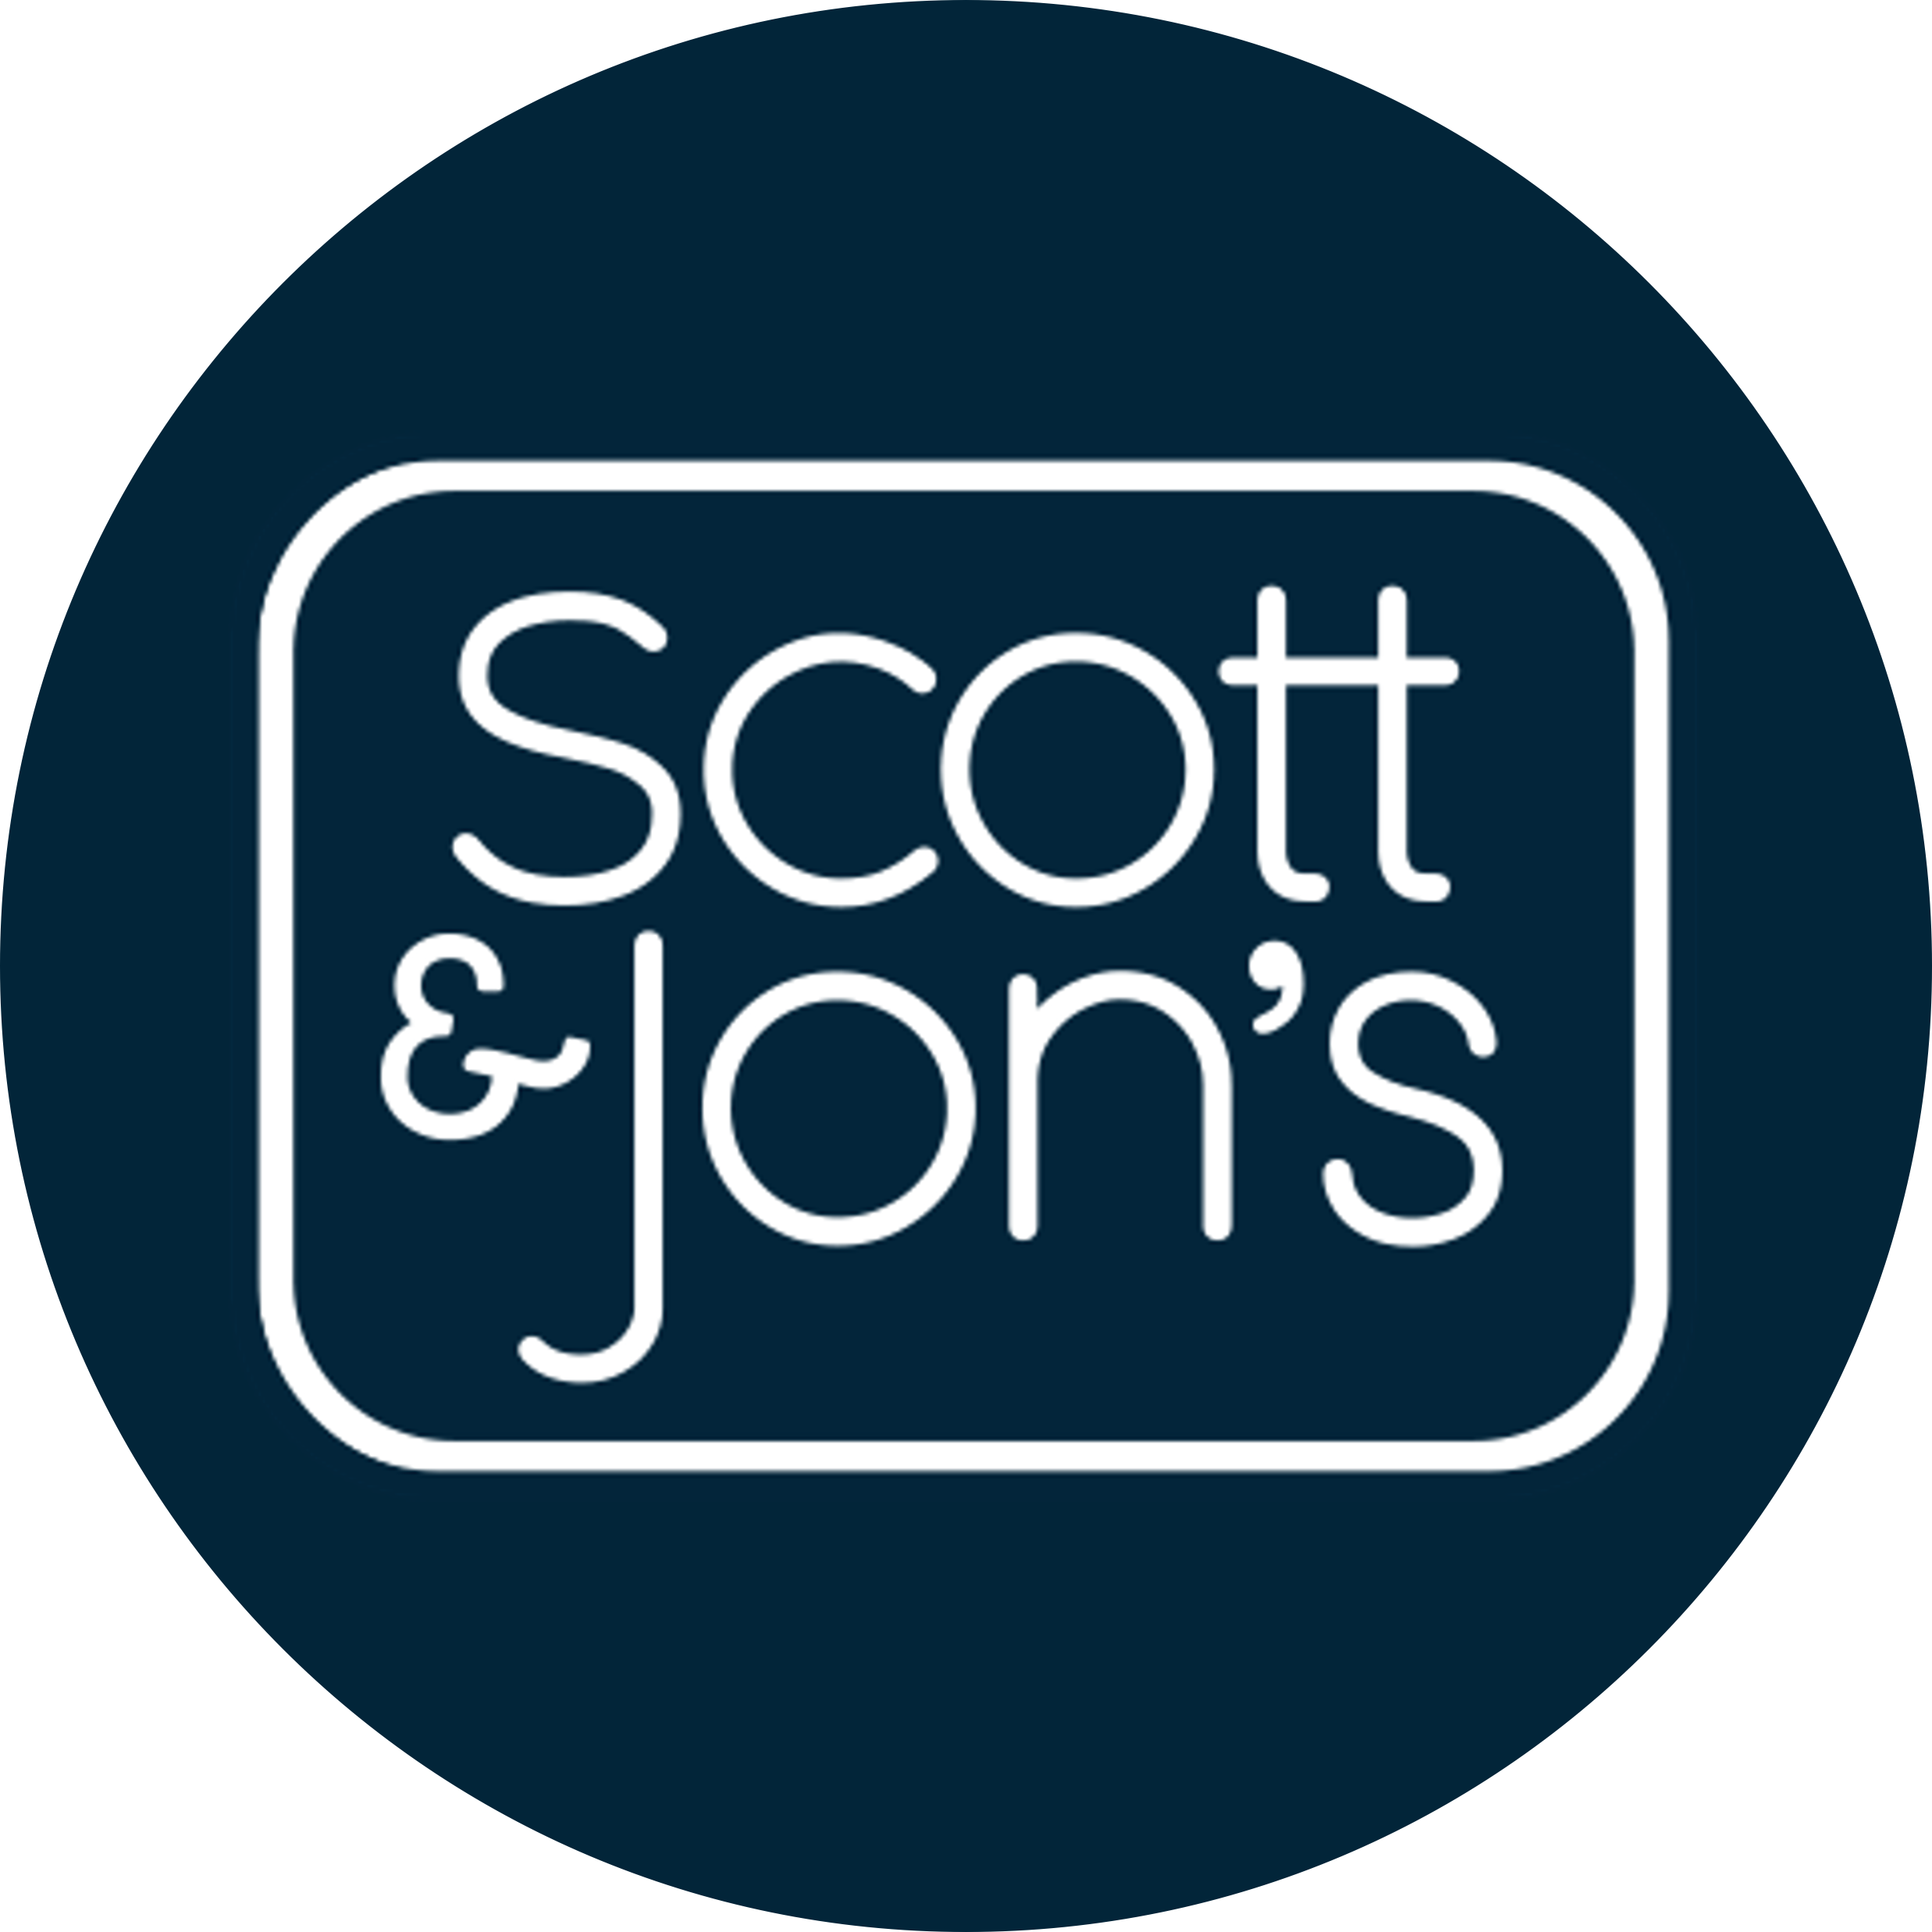 Scott&Jons logo